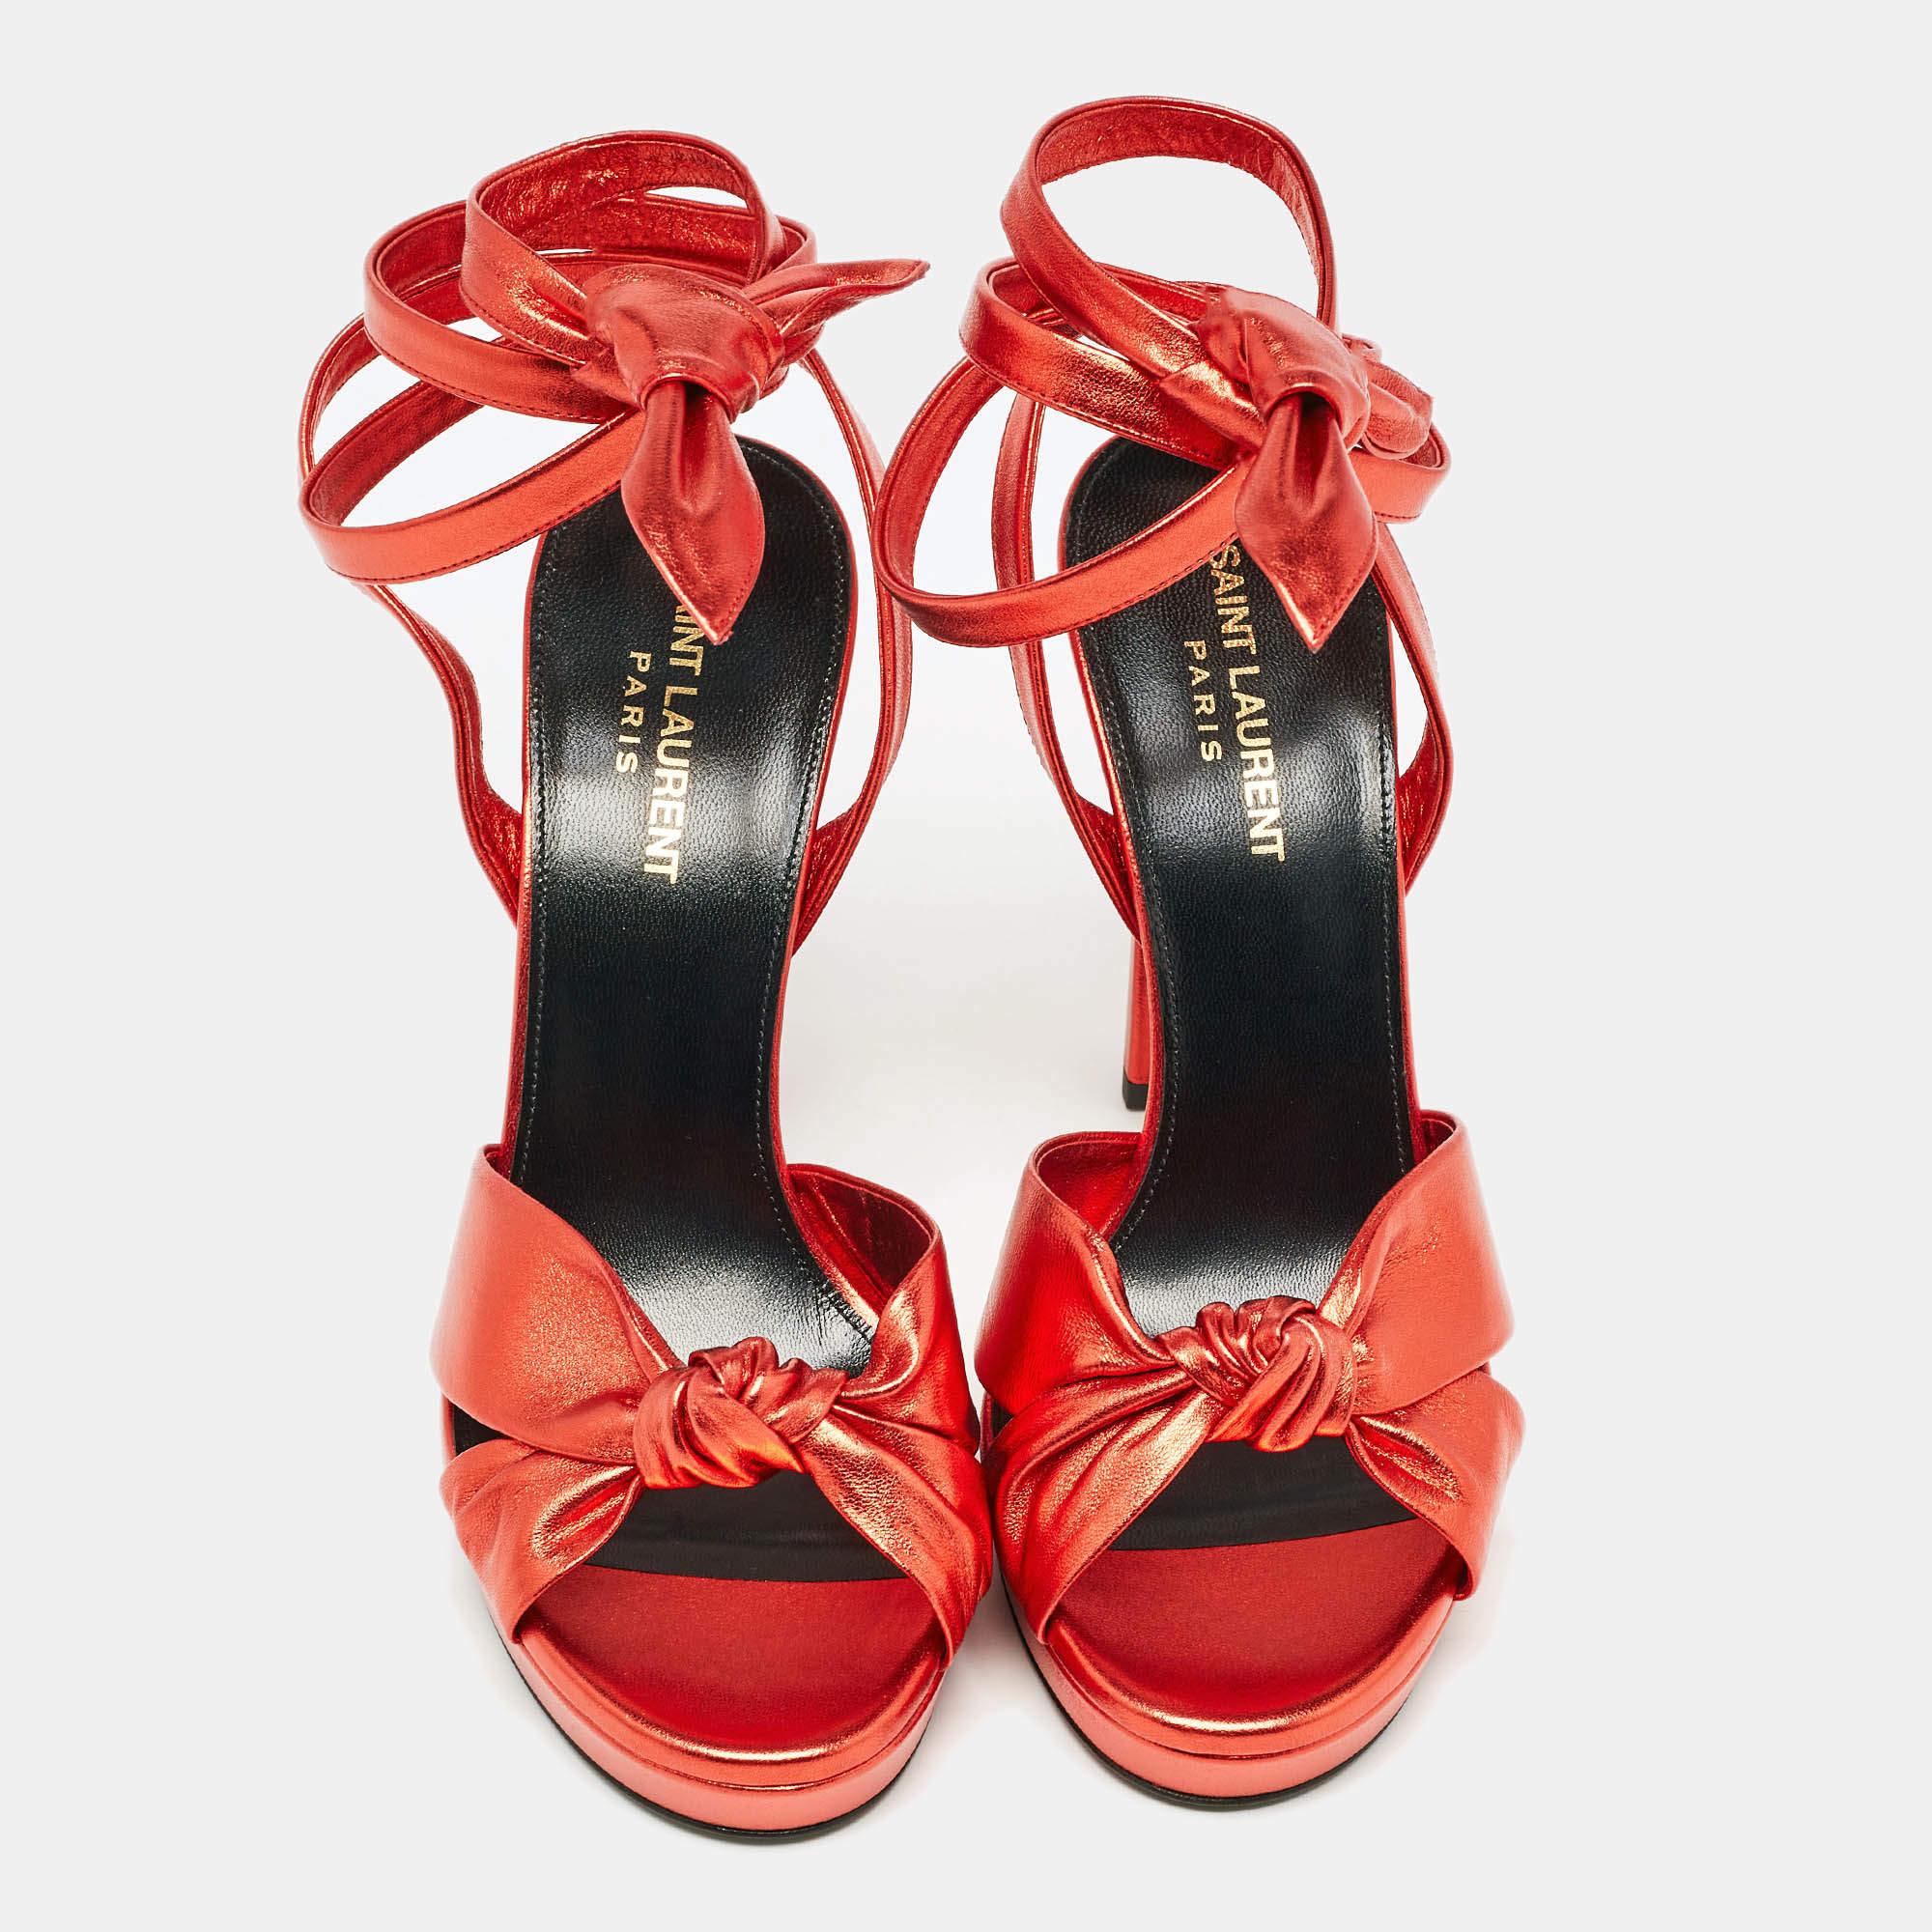 Ein wunderschönes Paar Sandalen aus dem Hause Yves Saint Laurent, das Ihre fabelhaften Styling-Entscheidungen unterstreicht. Sie sind aus rotem Leder gefertigt, zehenoffen und mit Knöchelriemen, bequemen ledergefütterten Innensohlen und 12 cm hohen